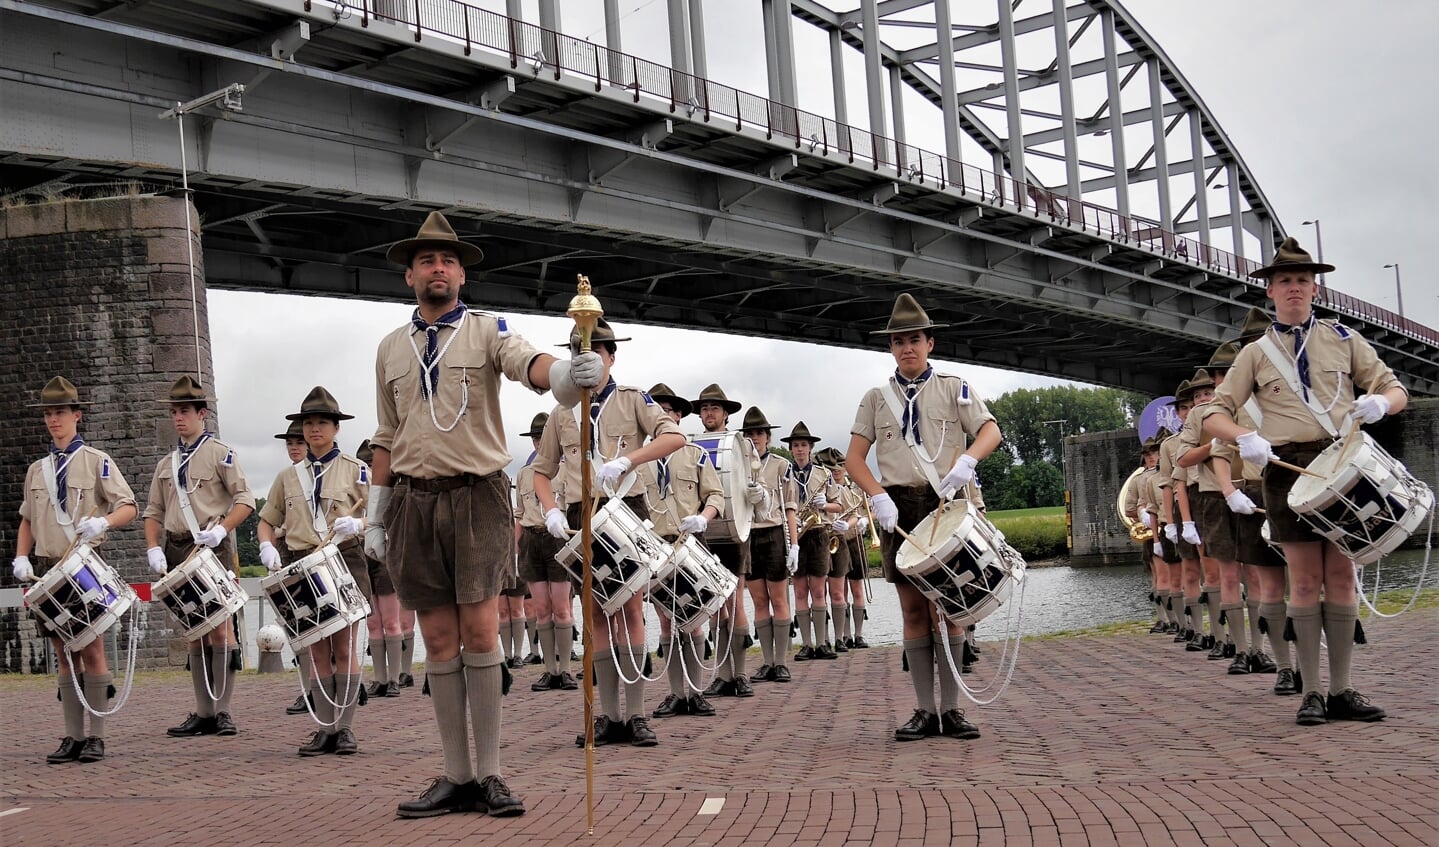 De Arnhem Band is één van de orkesten die op 14 mei optreden in de Arnhemse binnenstad.